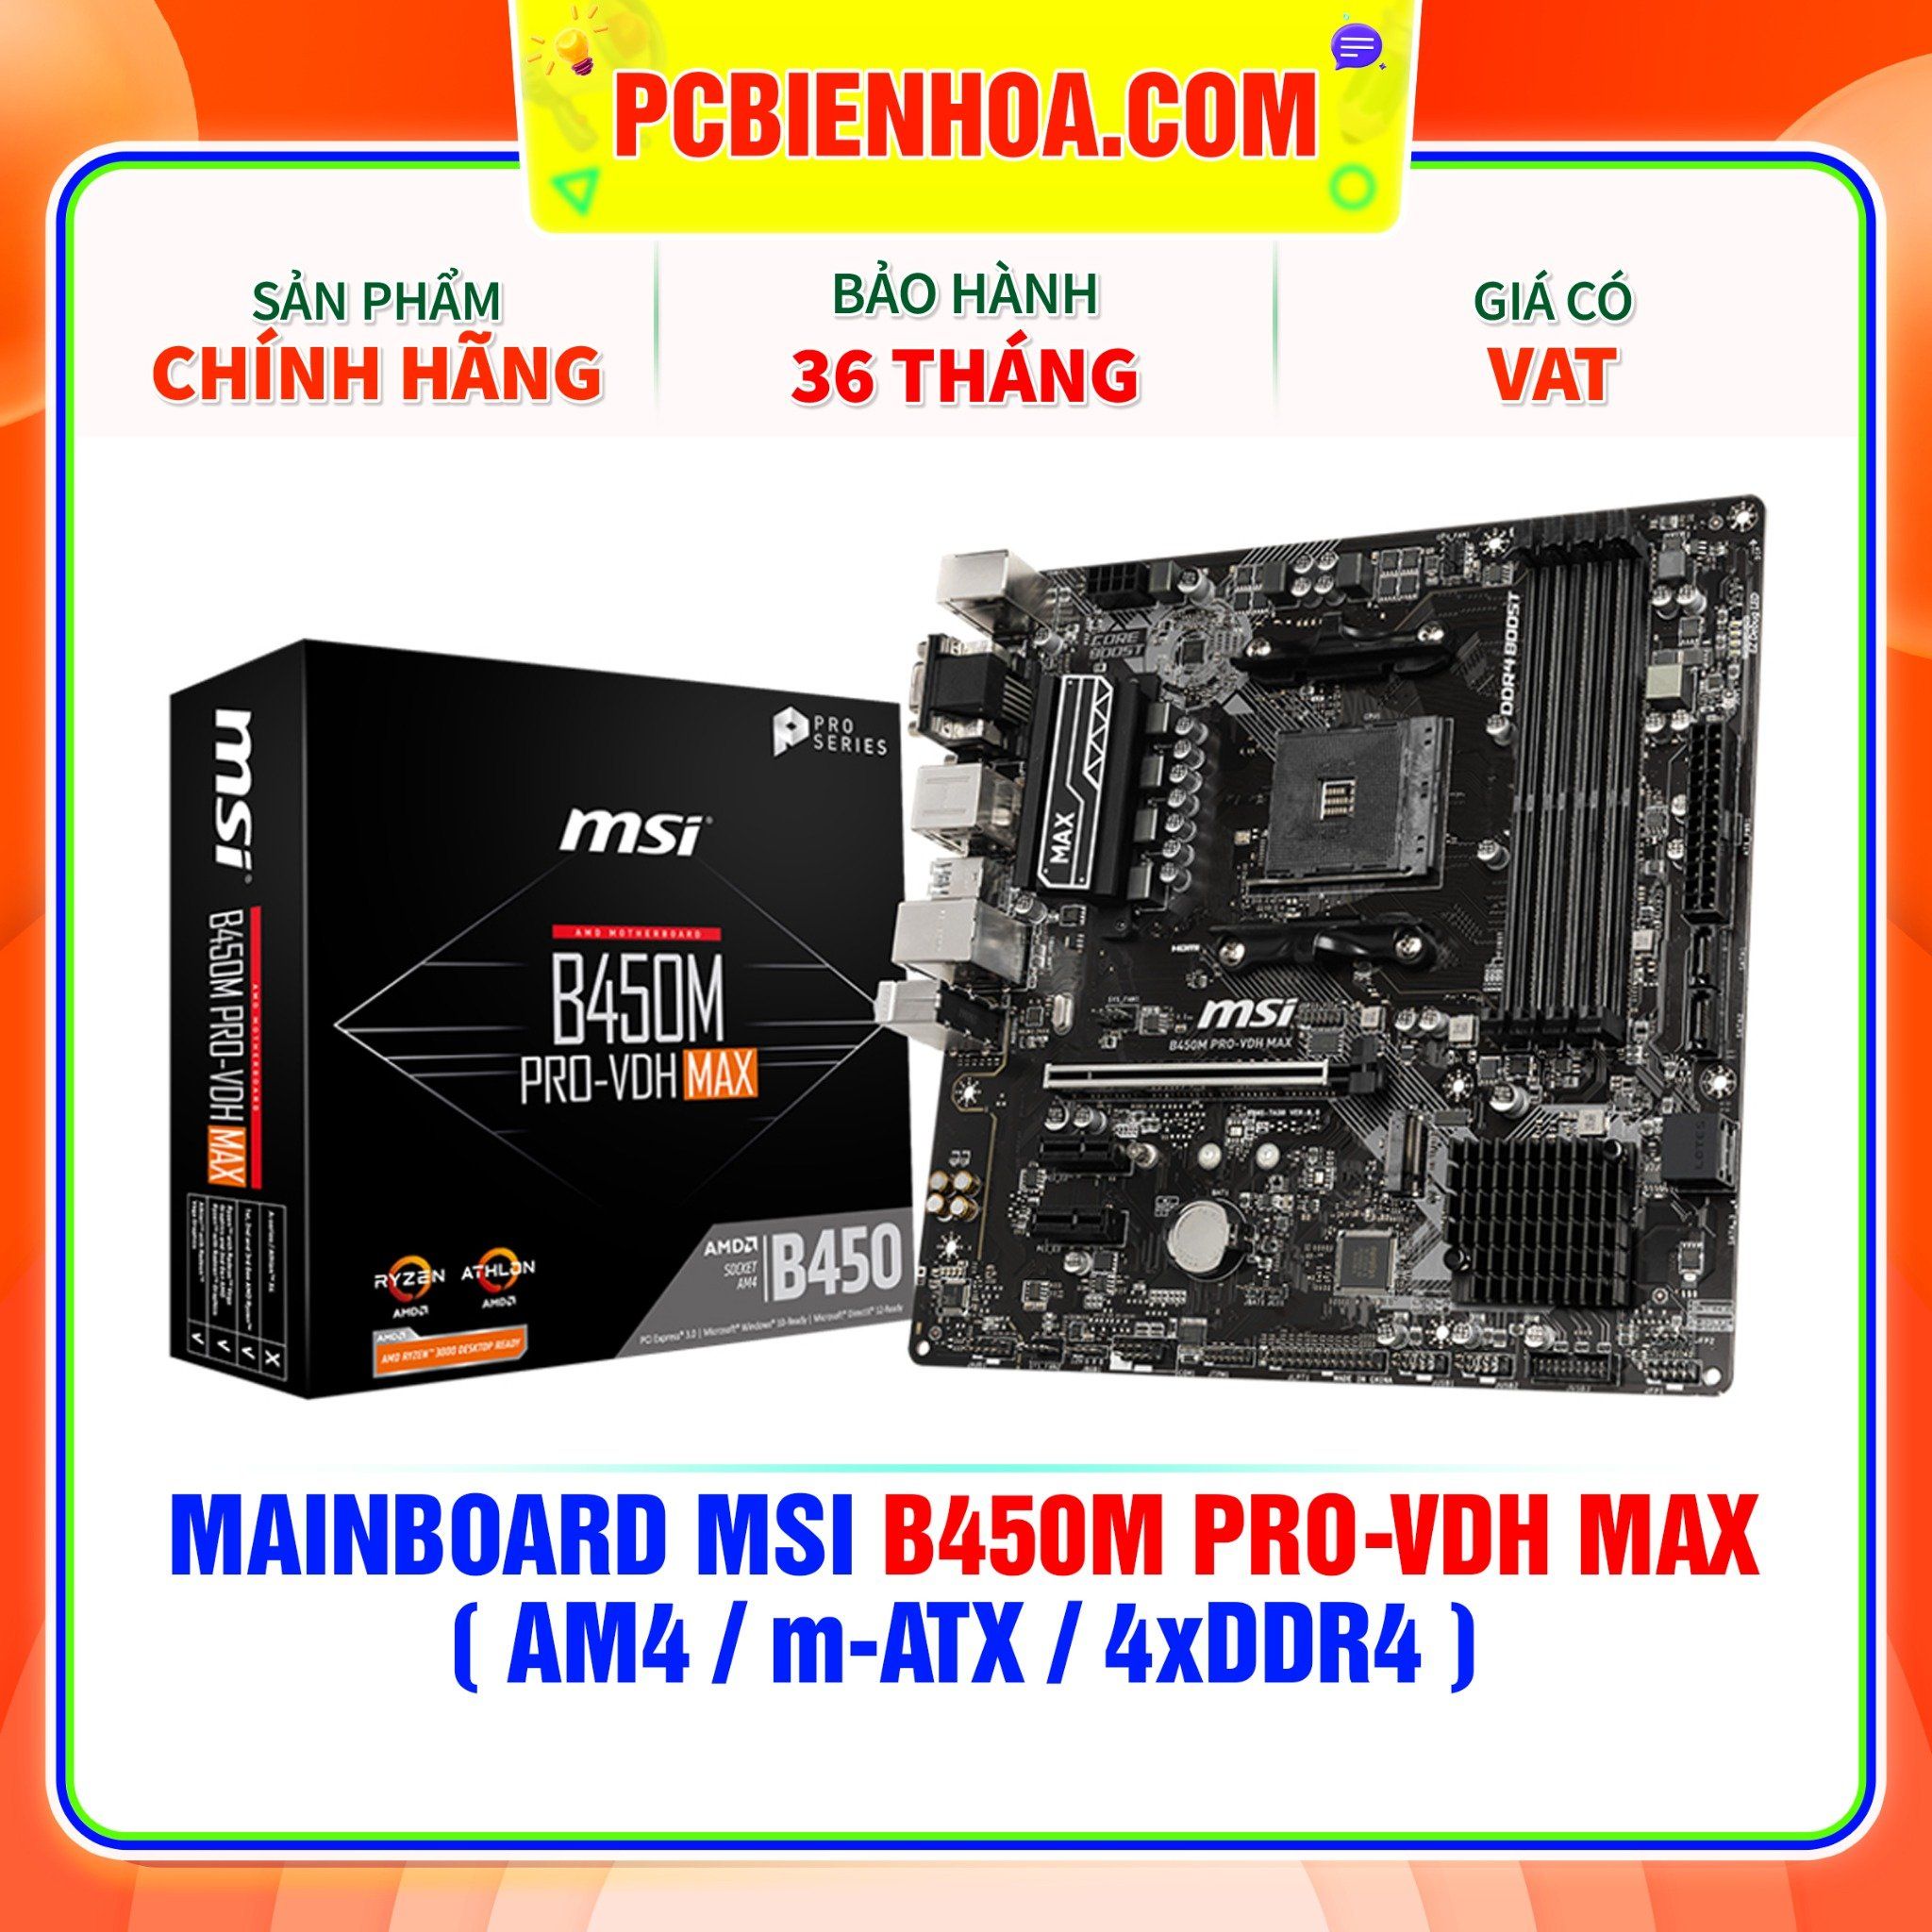  MAINBOARD MSI B450M PRO-VDH MAX ( AM4 / m-ATX / 4xDDR4 ) 